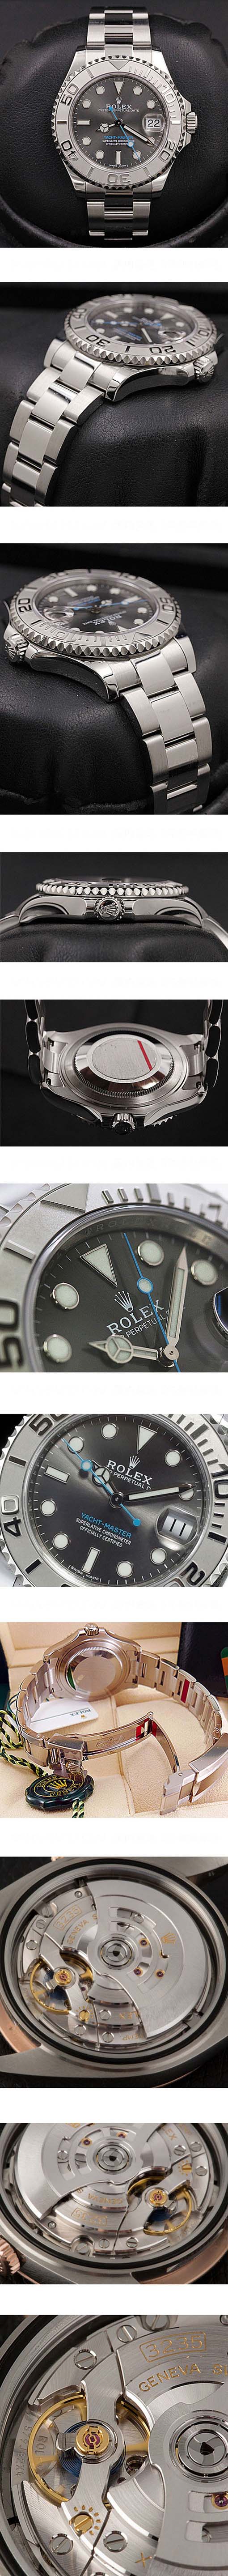 愛用腕時計 ROLEX ヨットマスター 37, Ref.268622 Cal.3235 28800振動 ブラック文字盤 デイト表示 鏡面仕上げ